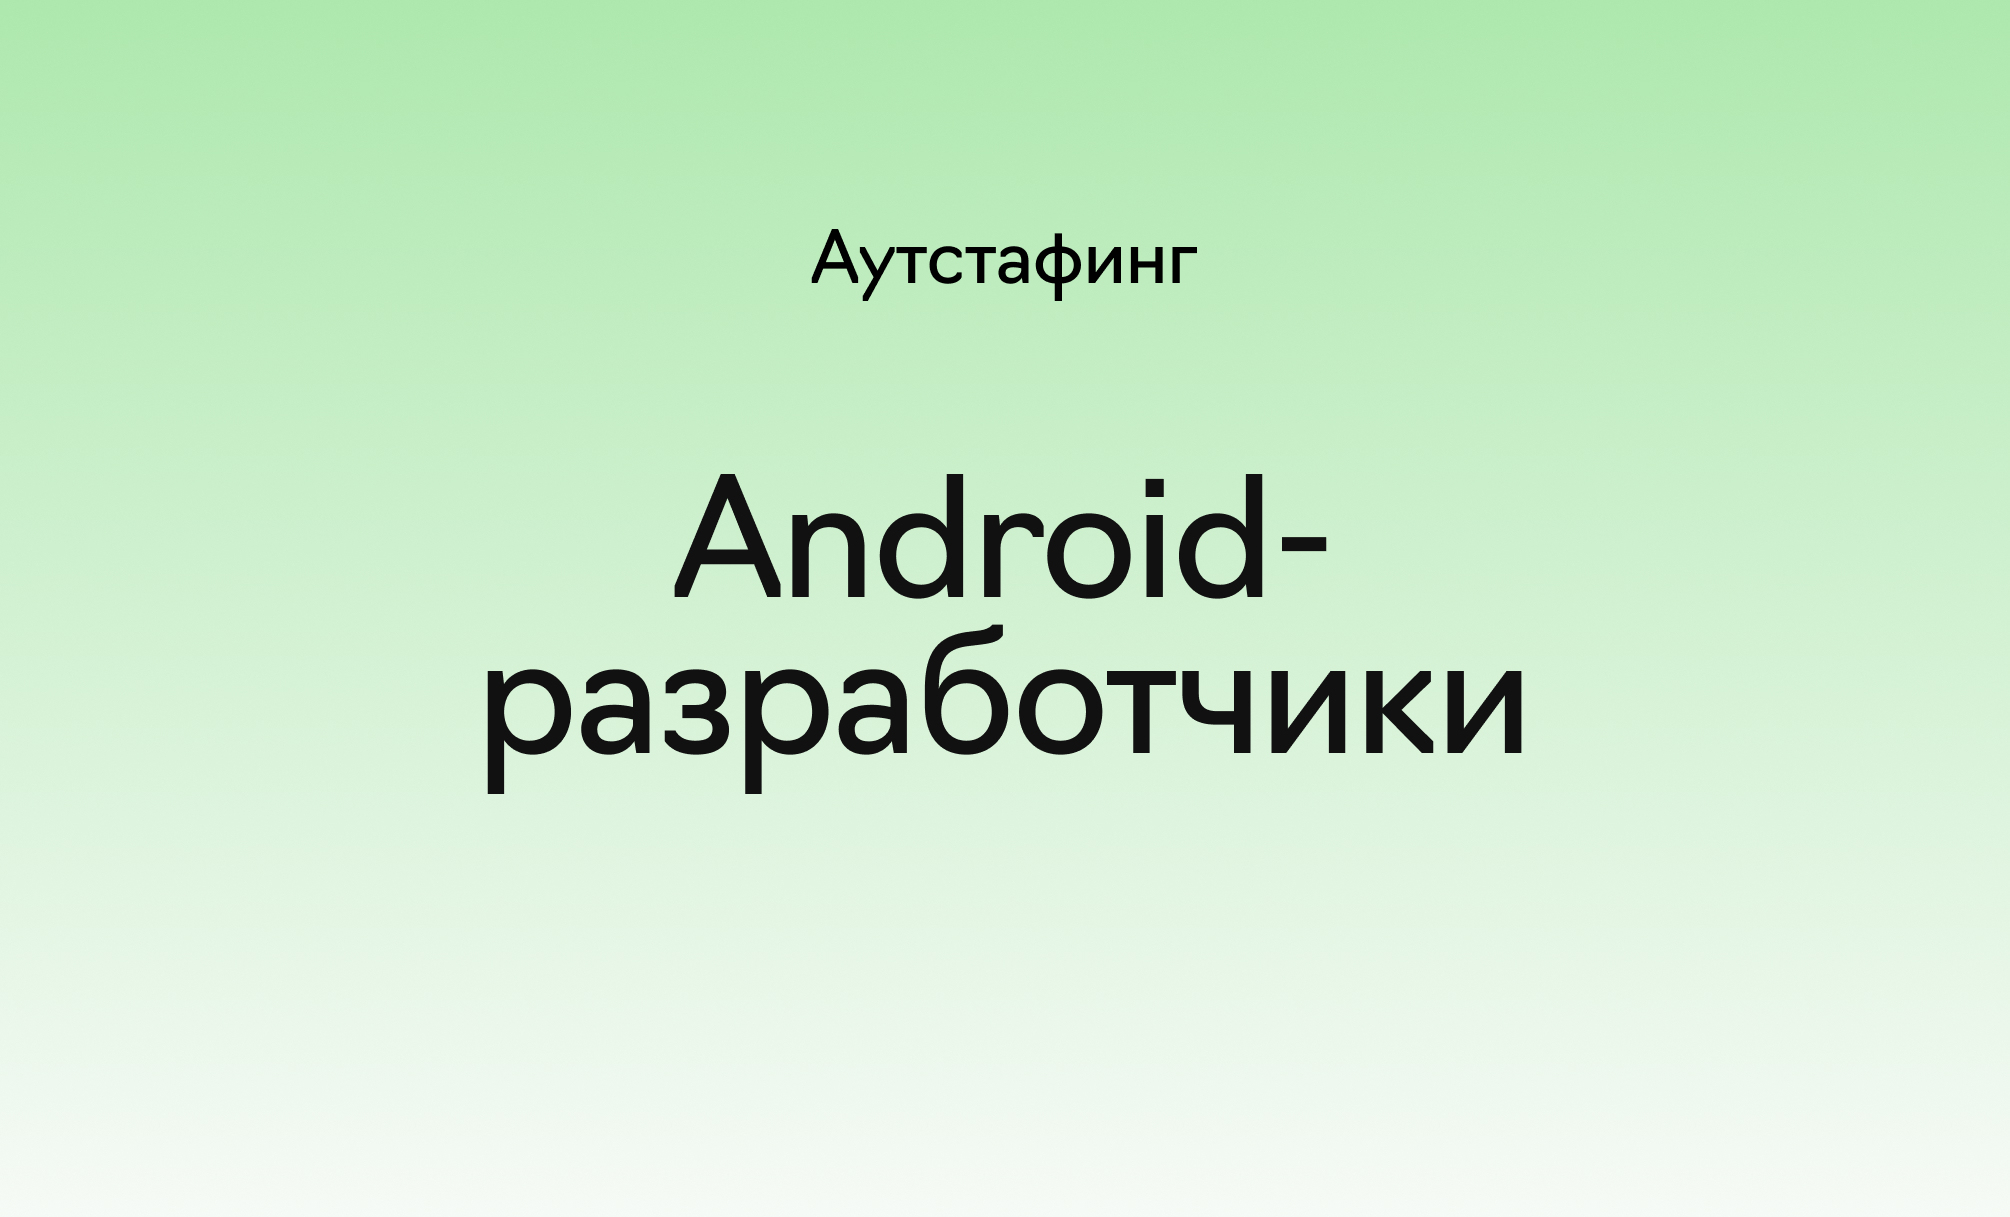 Аутстаффинг Android-разработчиков в&nbsp;«Лайв&nbsp;Тайпинге», фотография 1